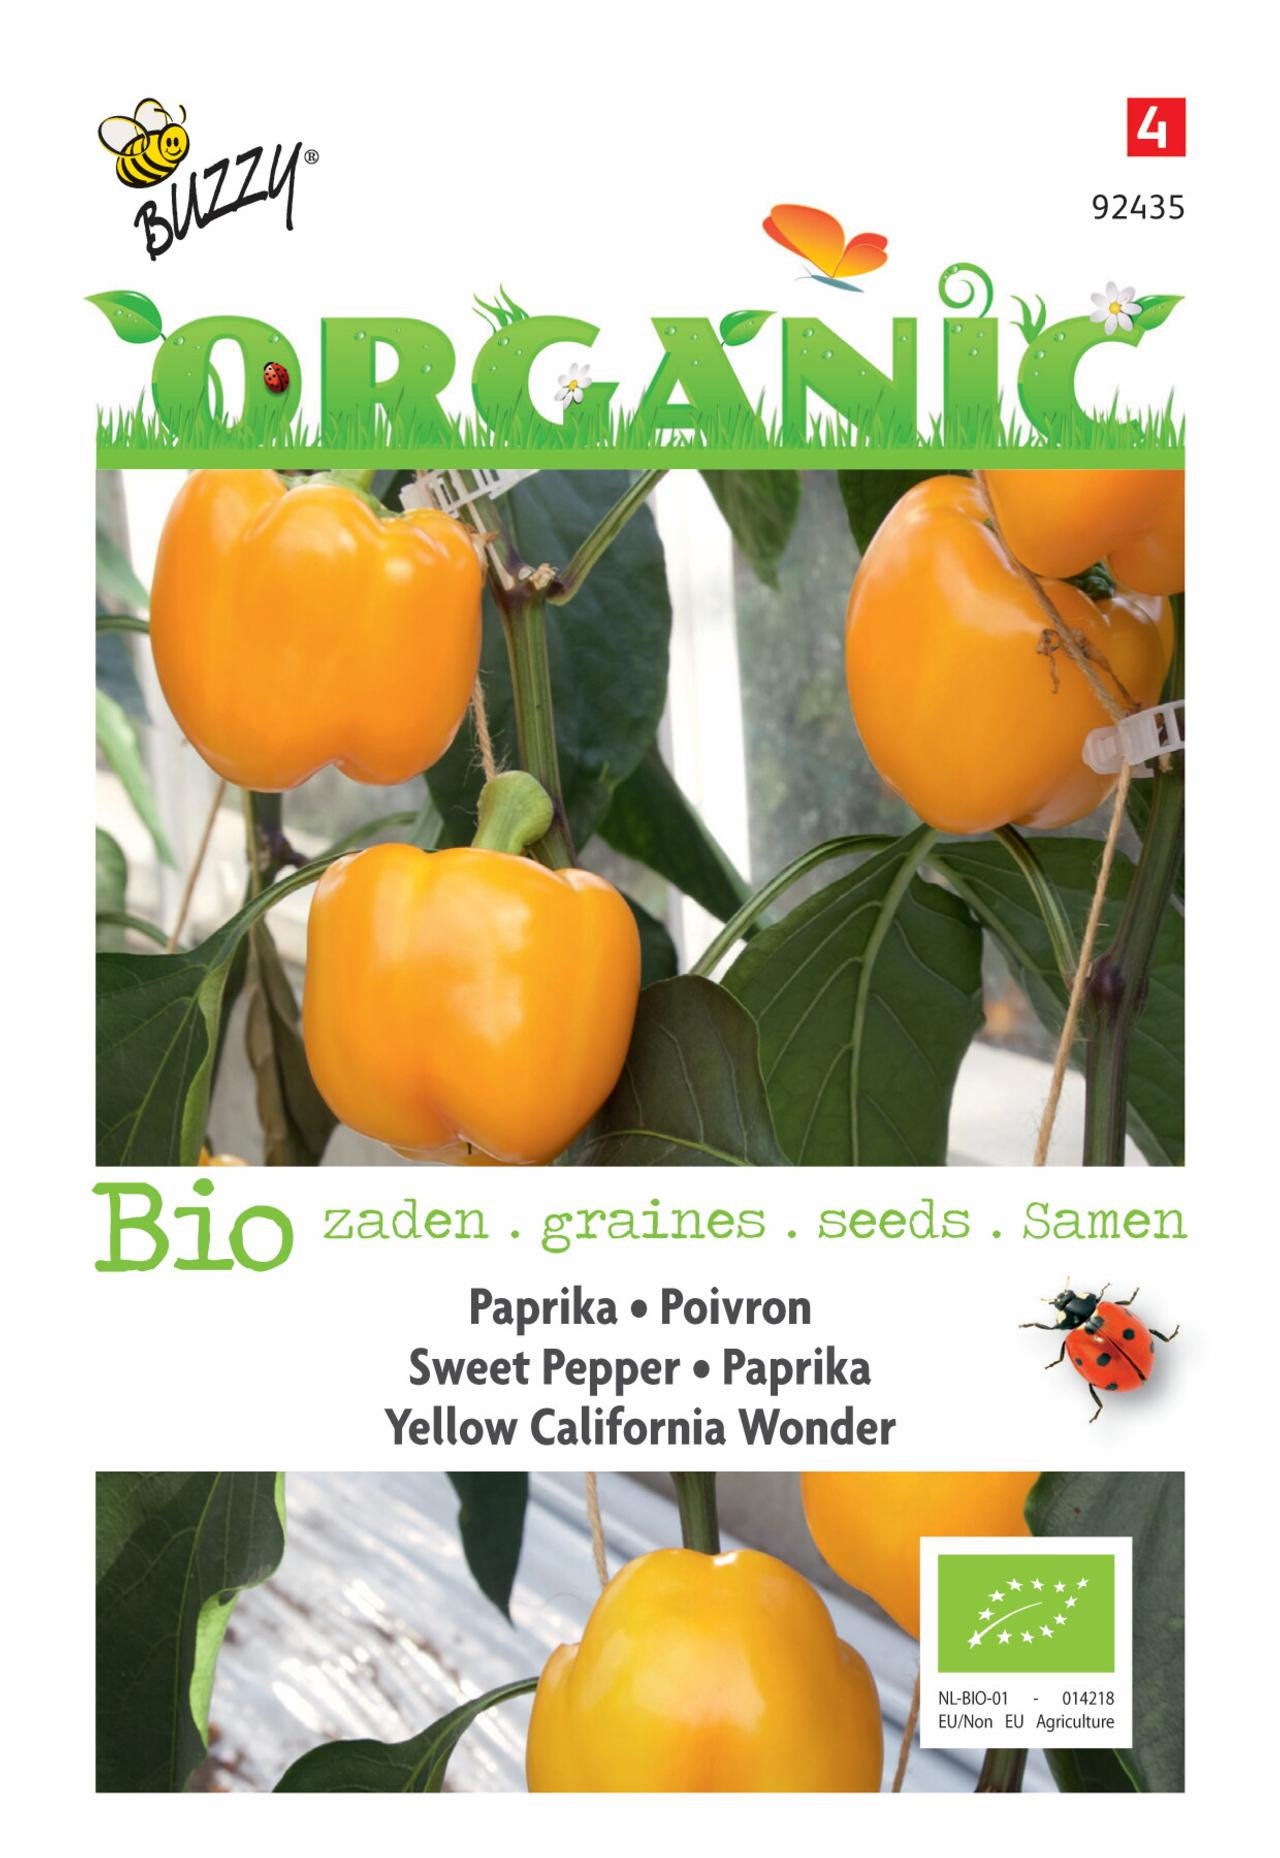 Capsicum annuum 'Yellow California Wonder' (BIO) plant